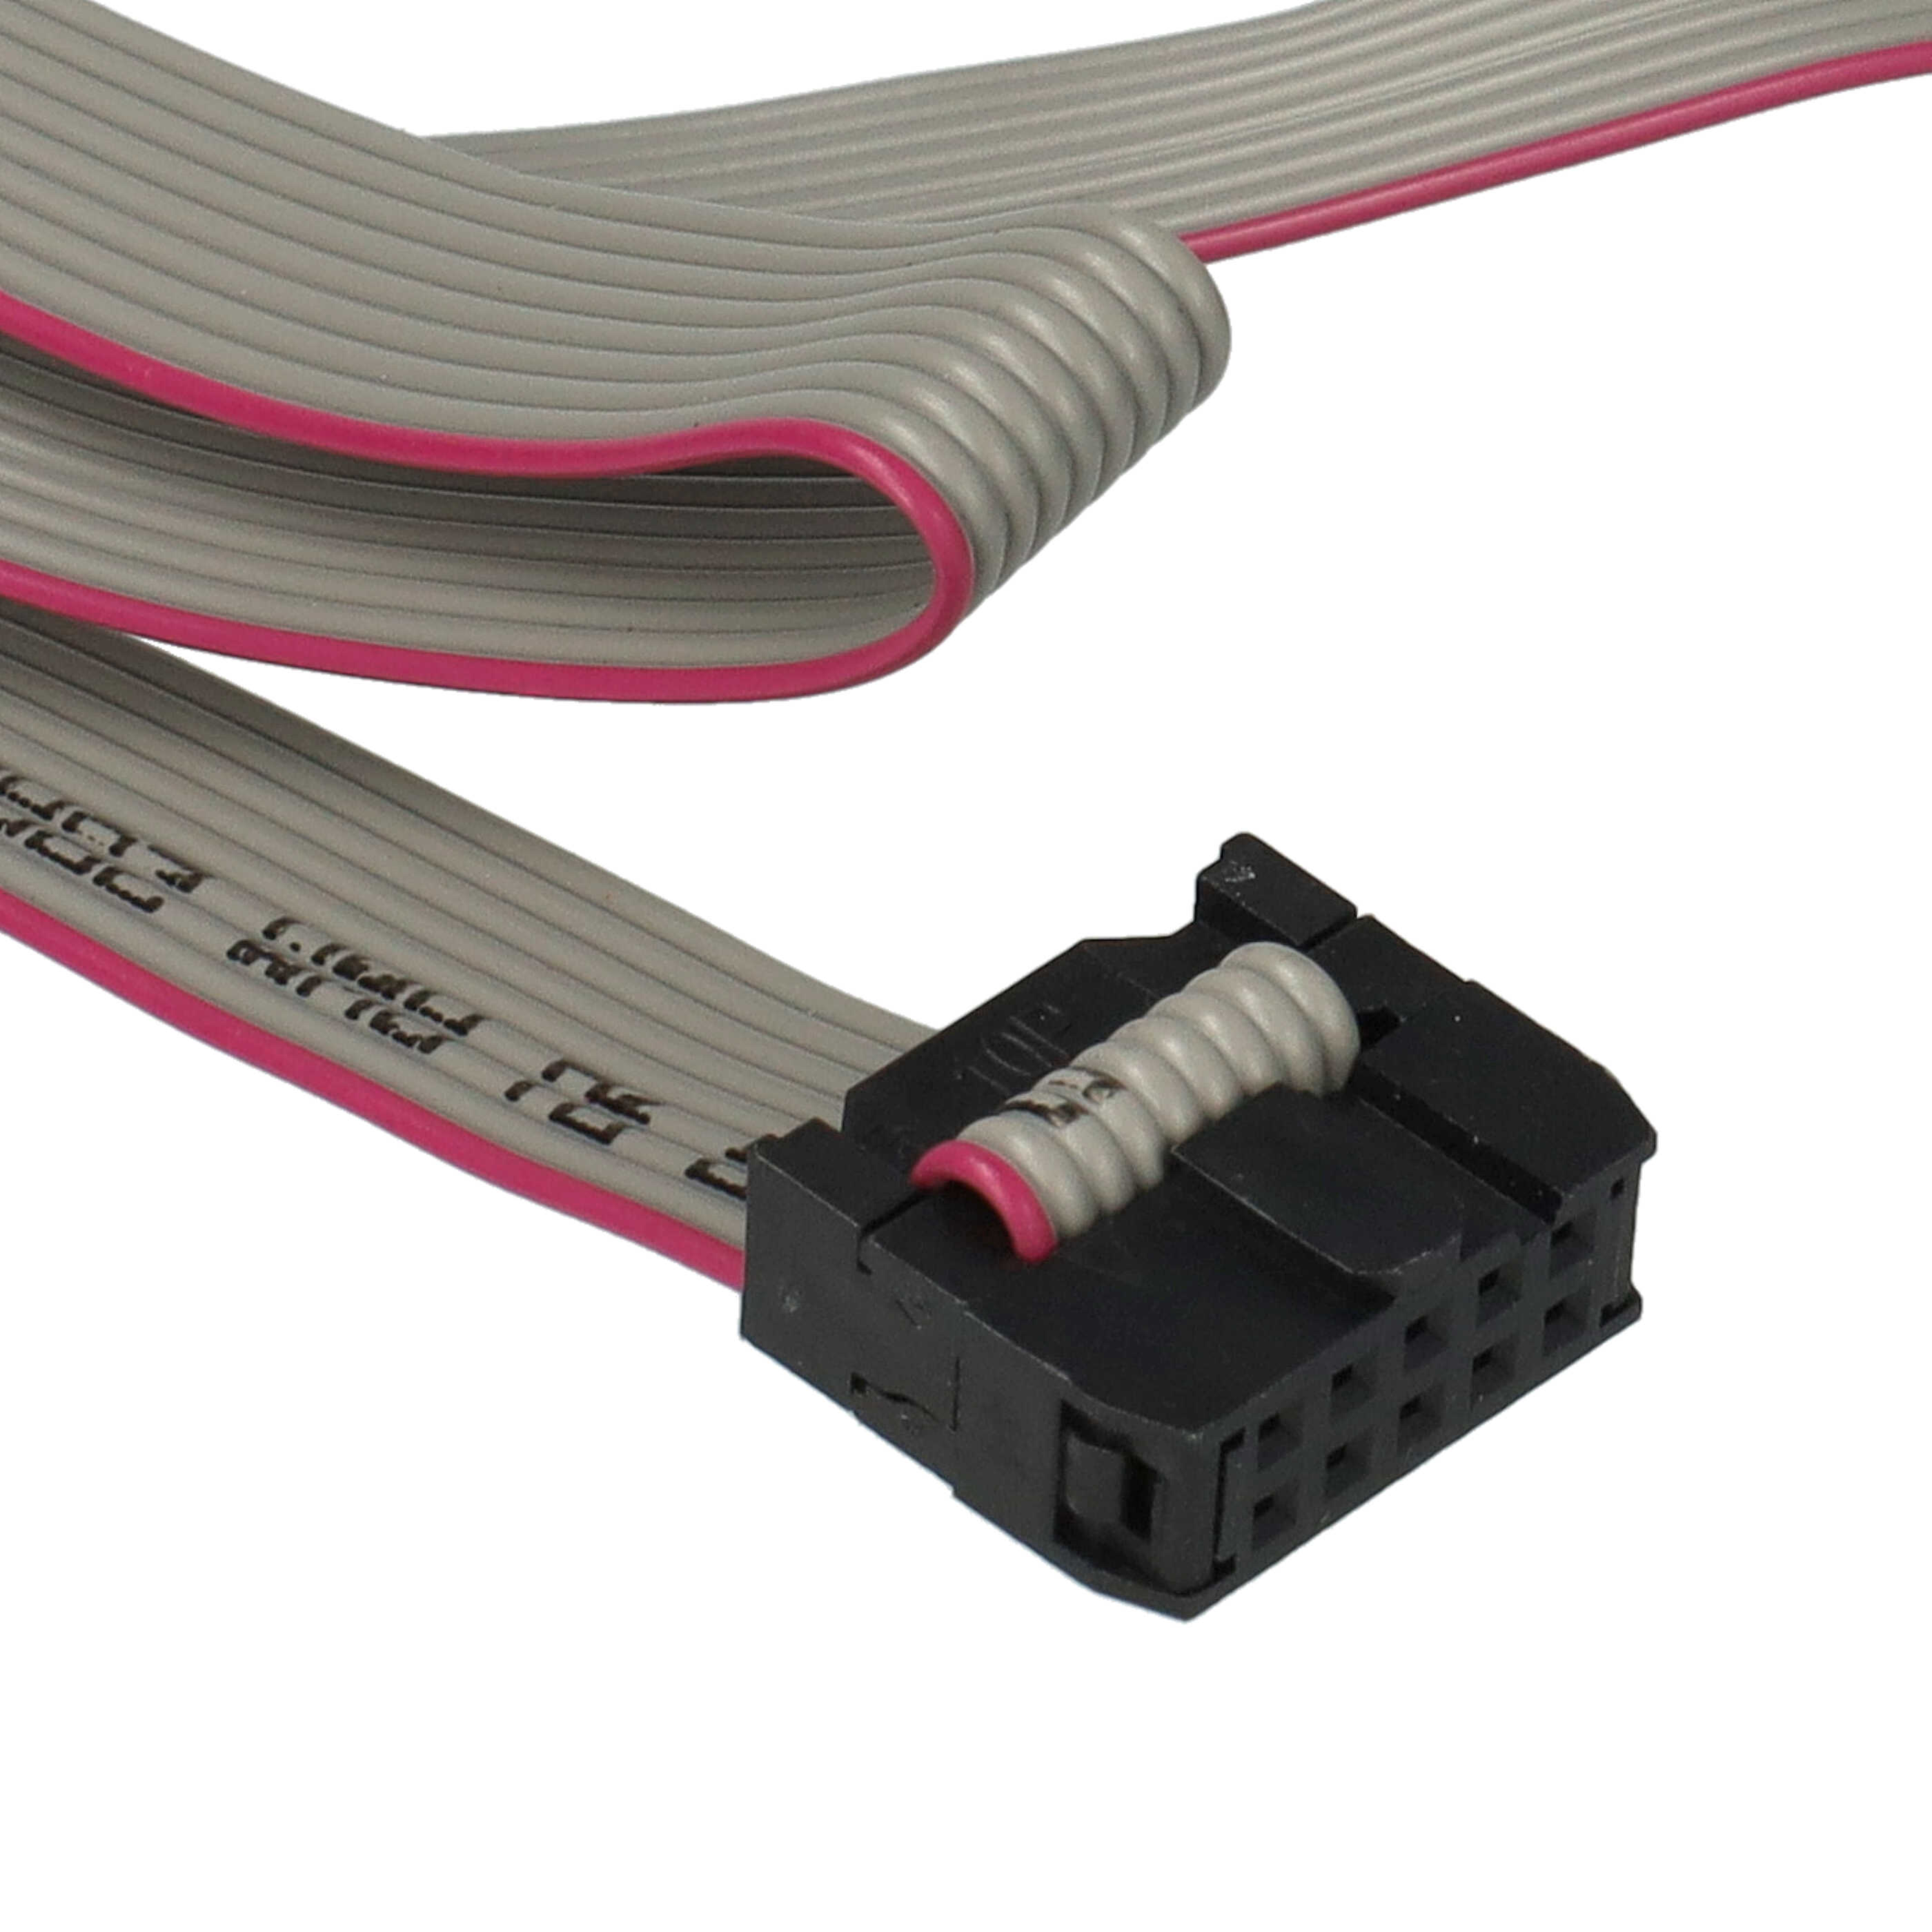 Placa RS232 para ordenador, PC - Con cable de 20 cm al conector RS232 de 10 pines de la placa base